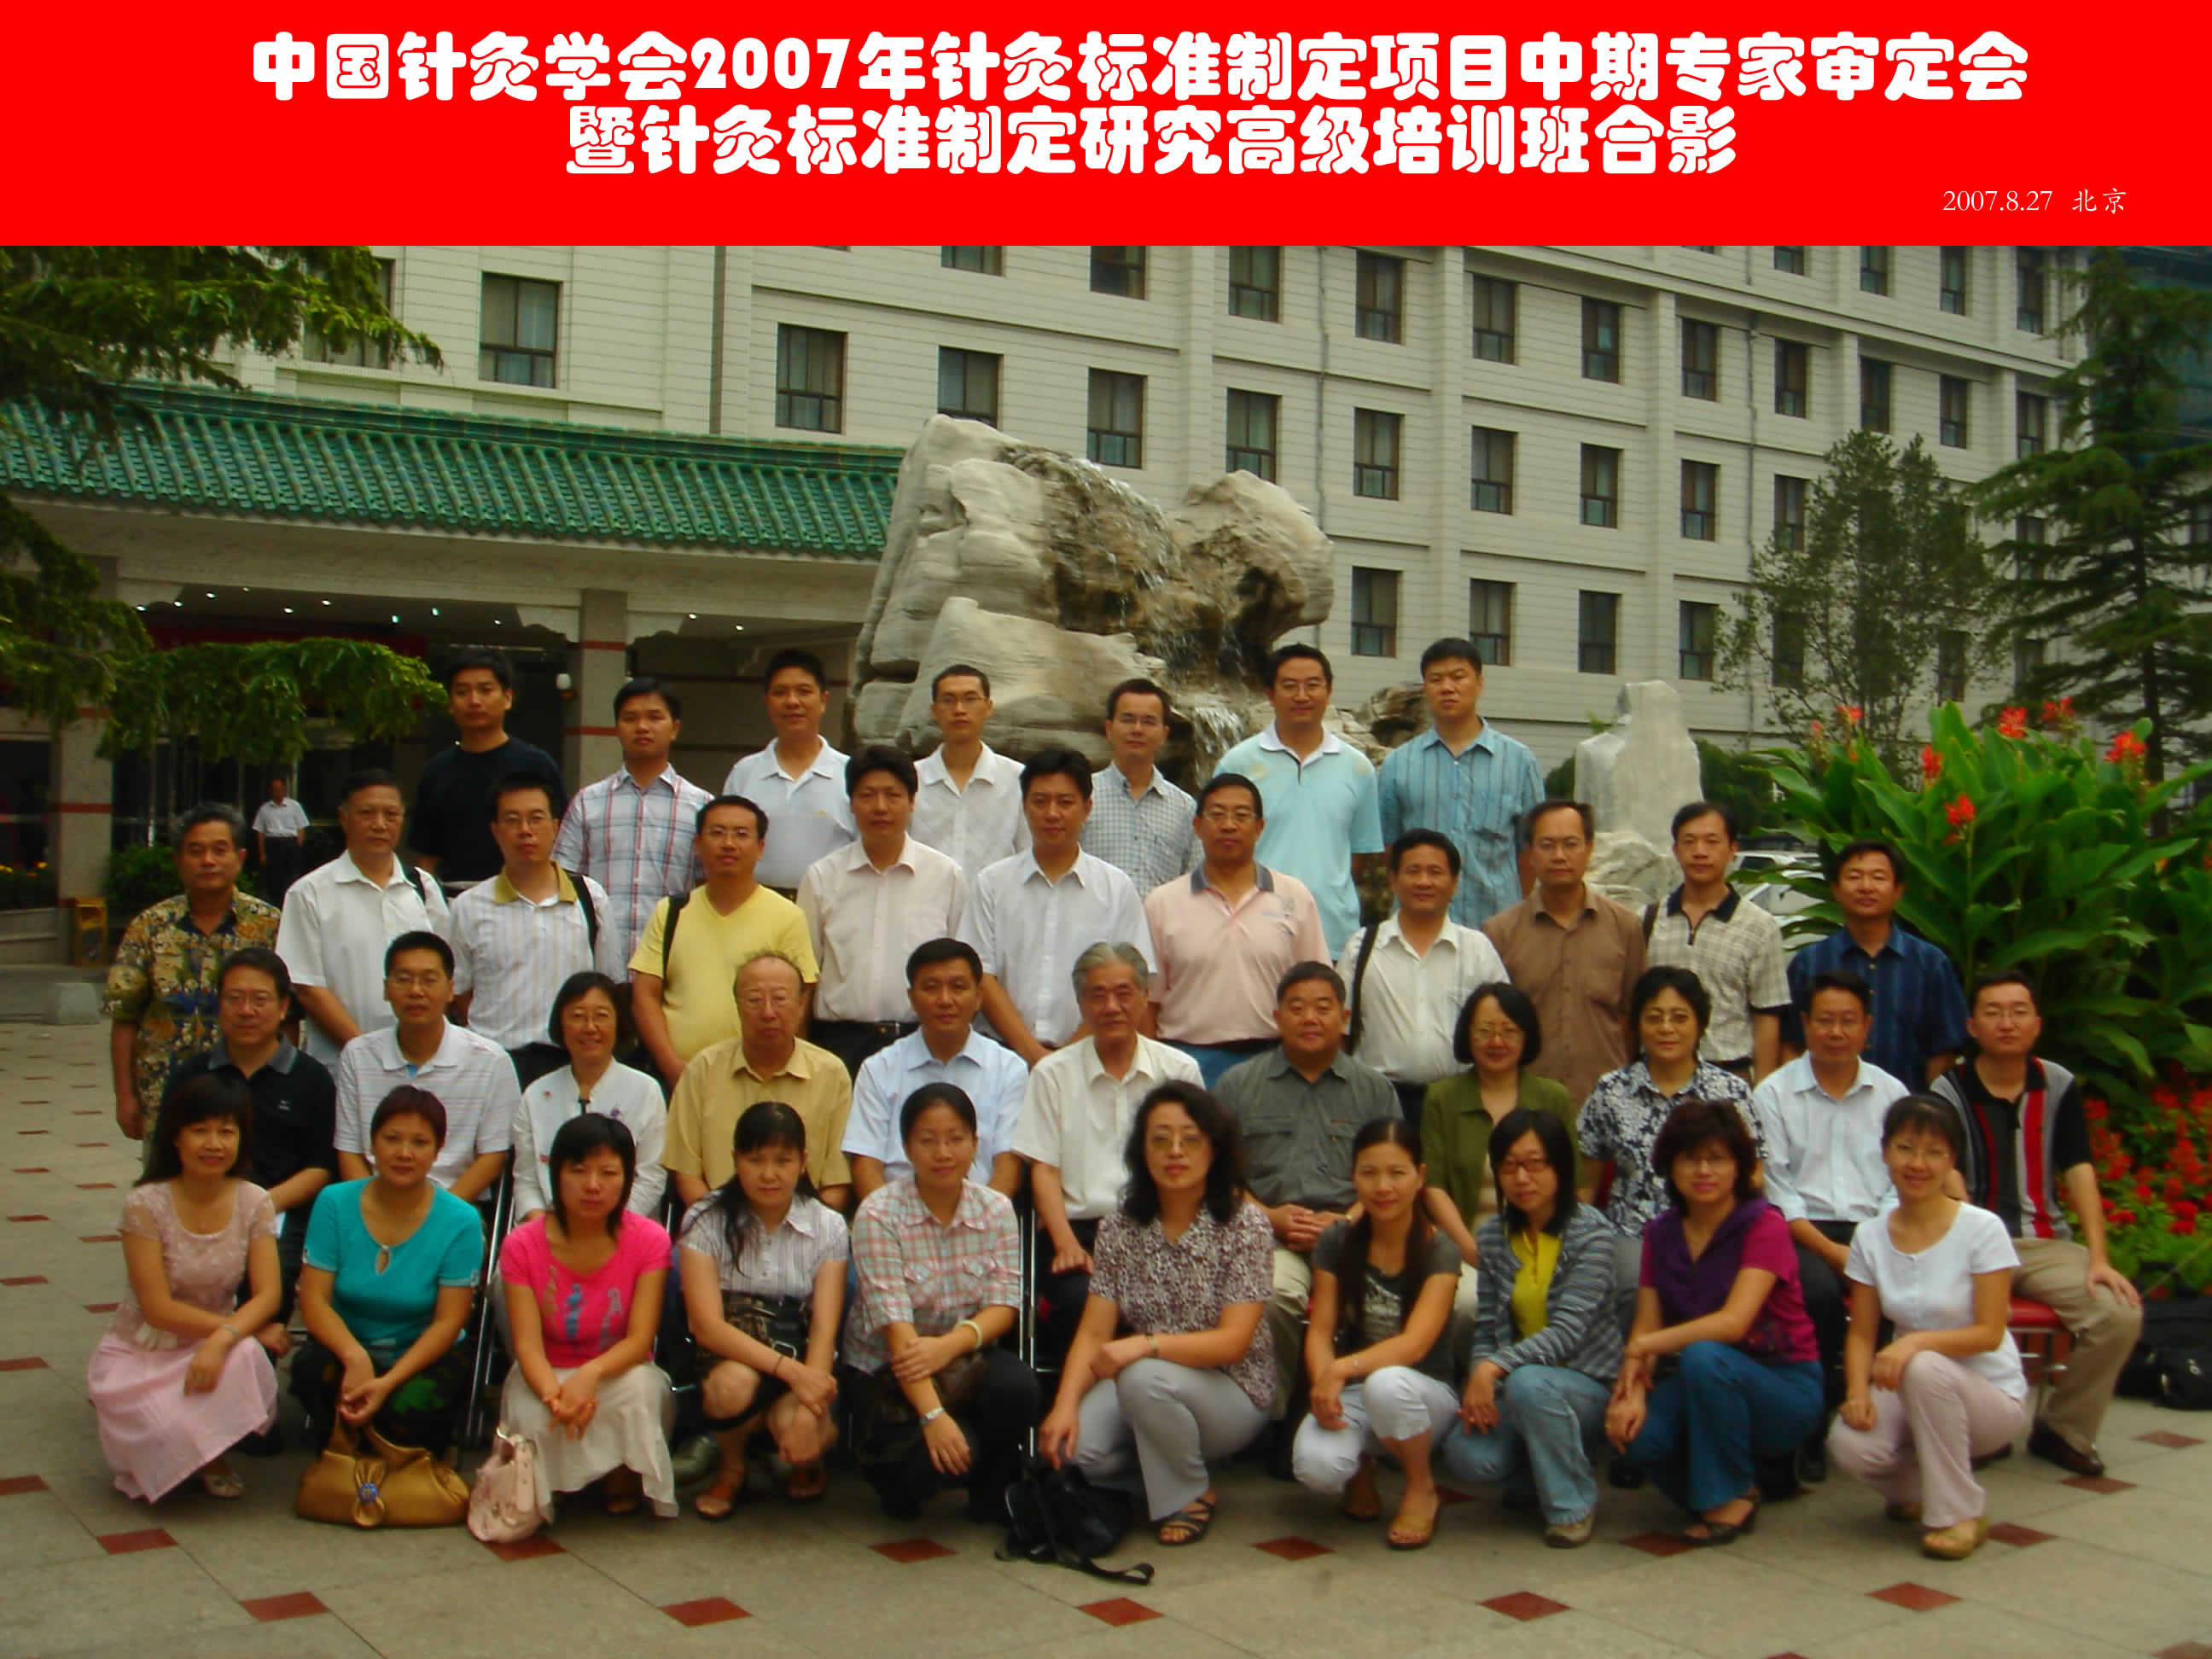 中国针灸学会2007年针灸标准制定项目中期专家审定会暨针灸标准制定研究高级培训班在京召开.jpg